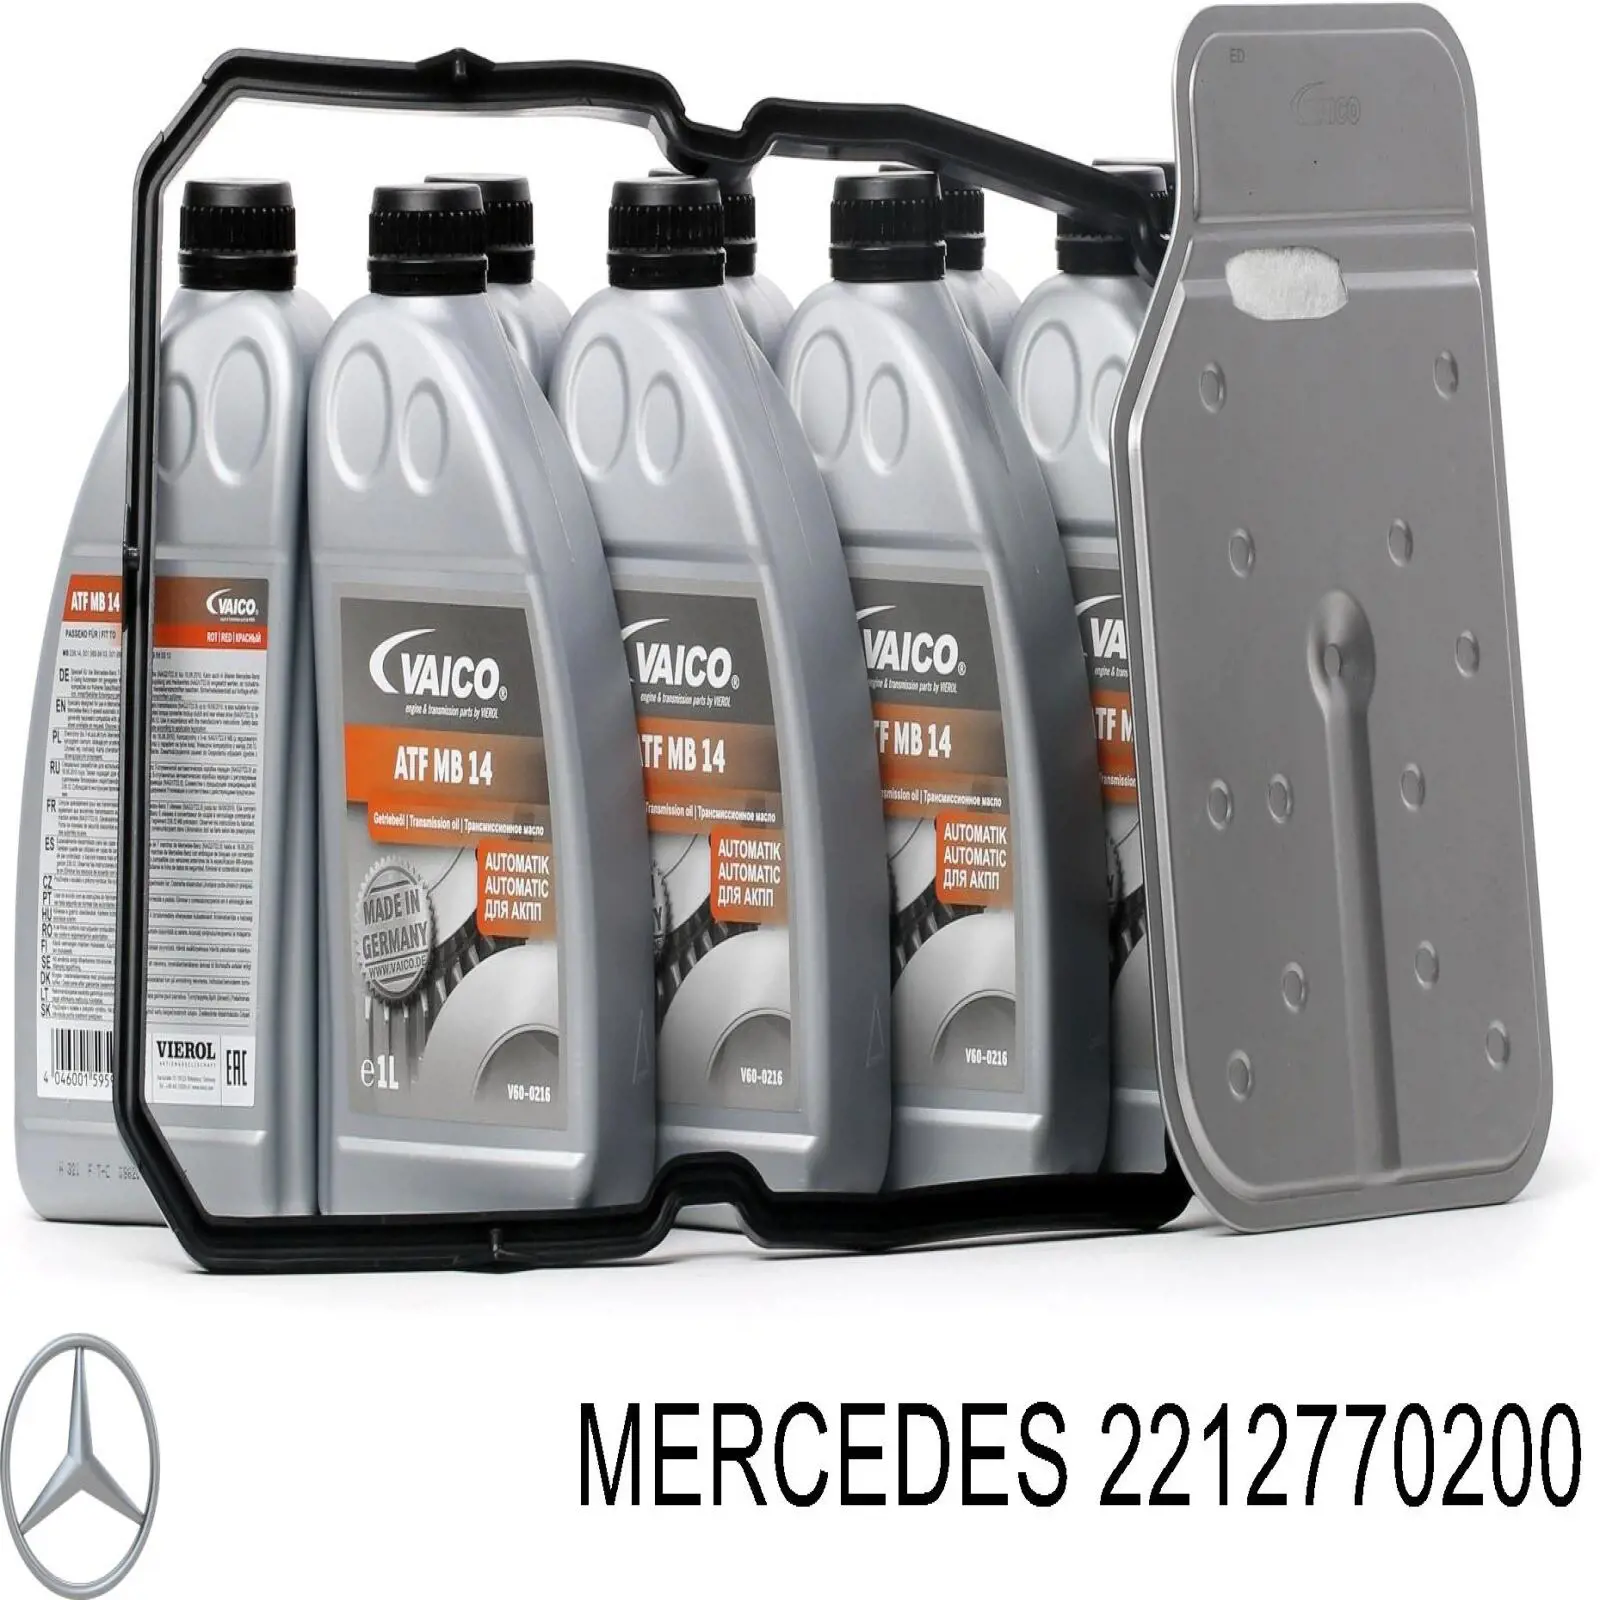 2212770200 Mercedes filtro caja de cambios automática